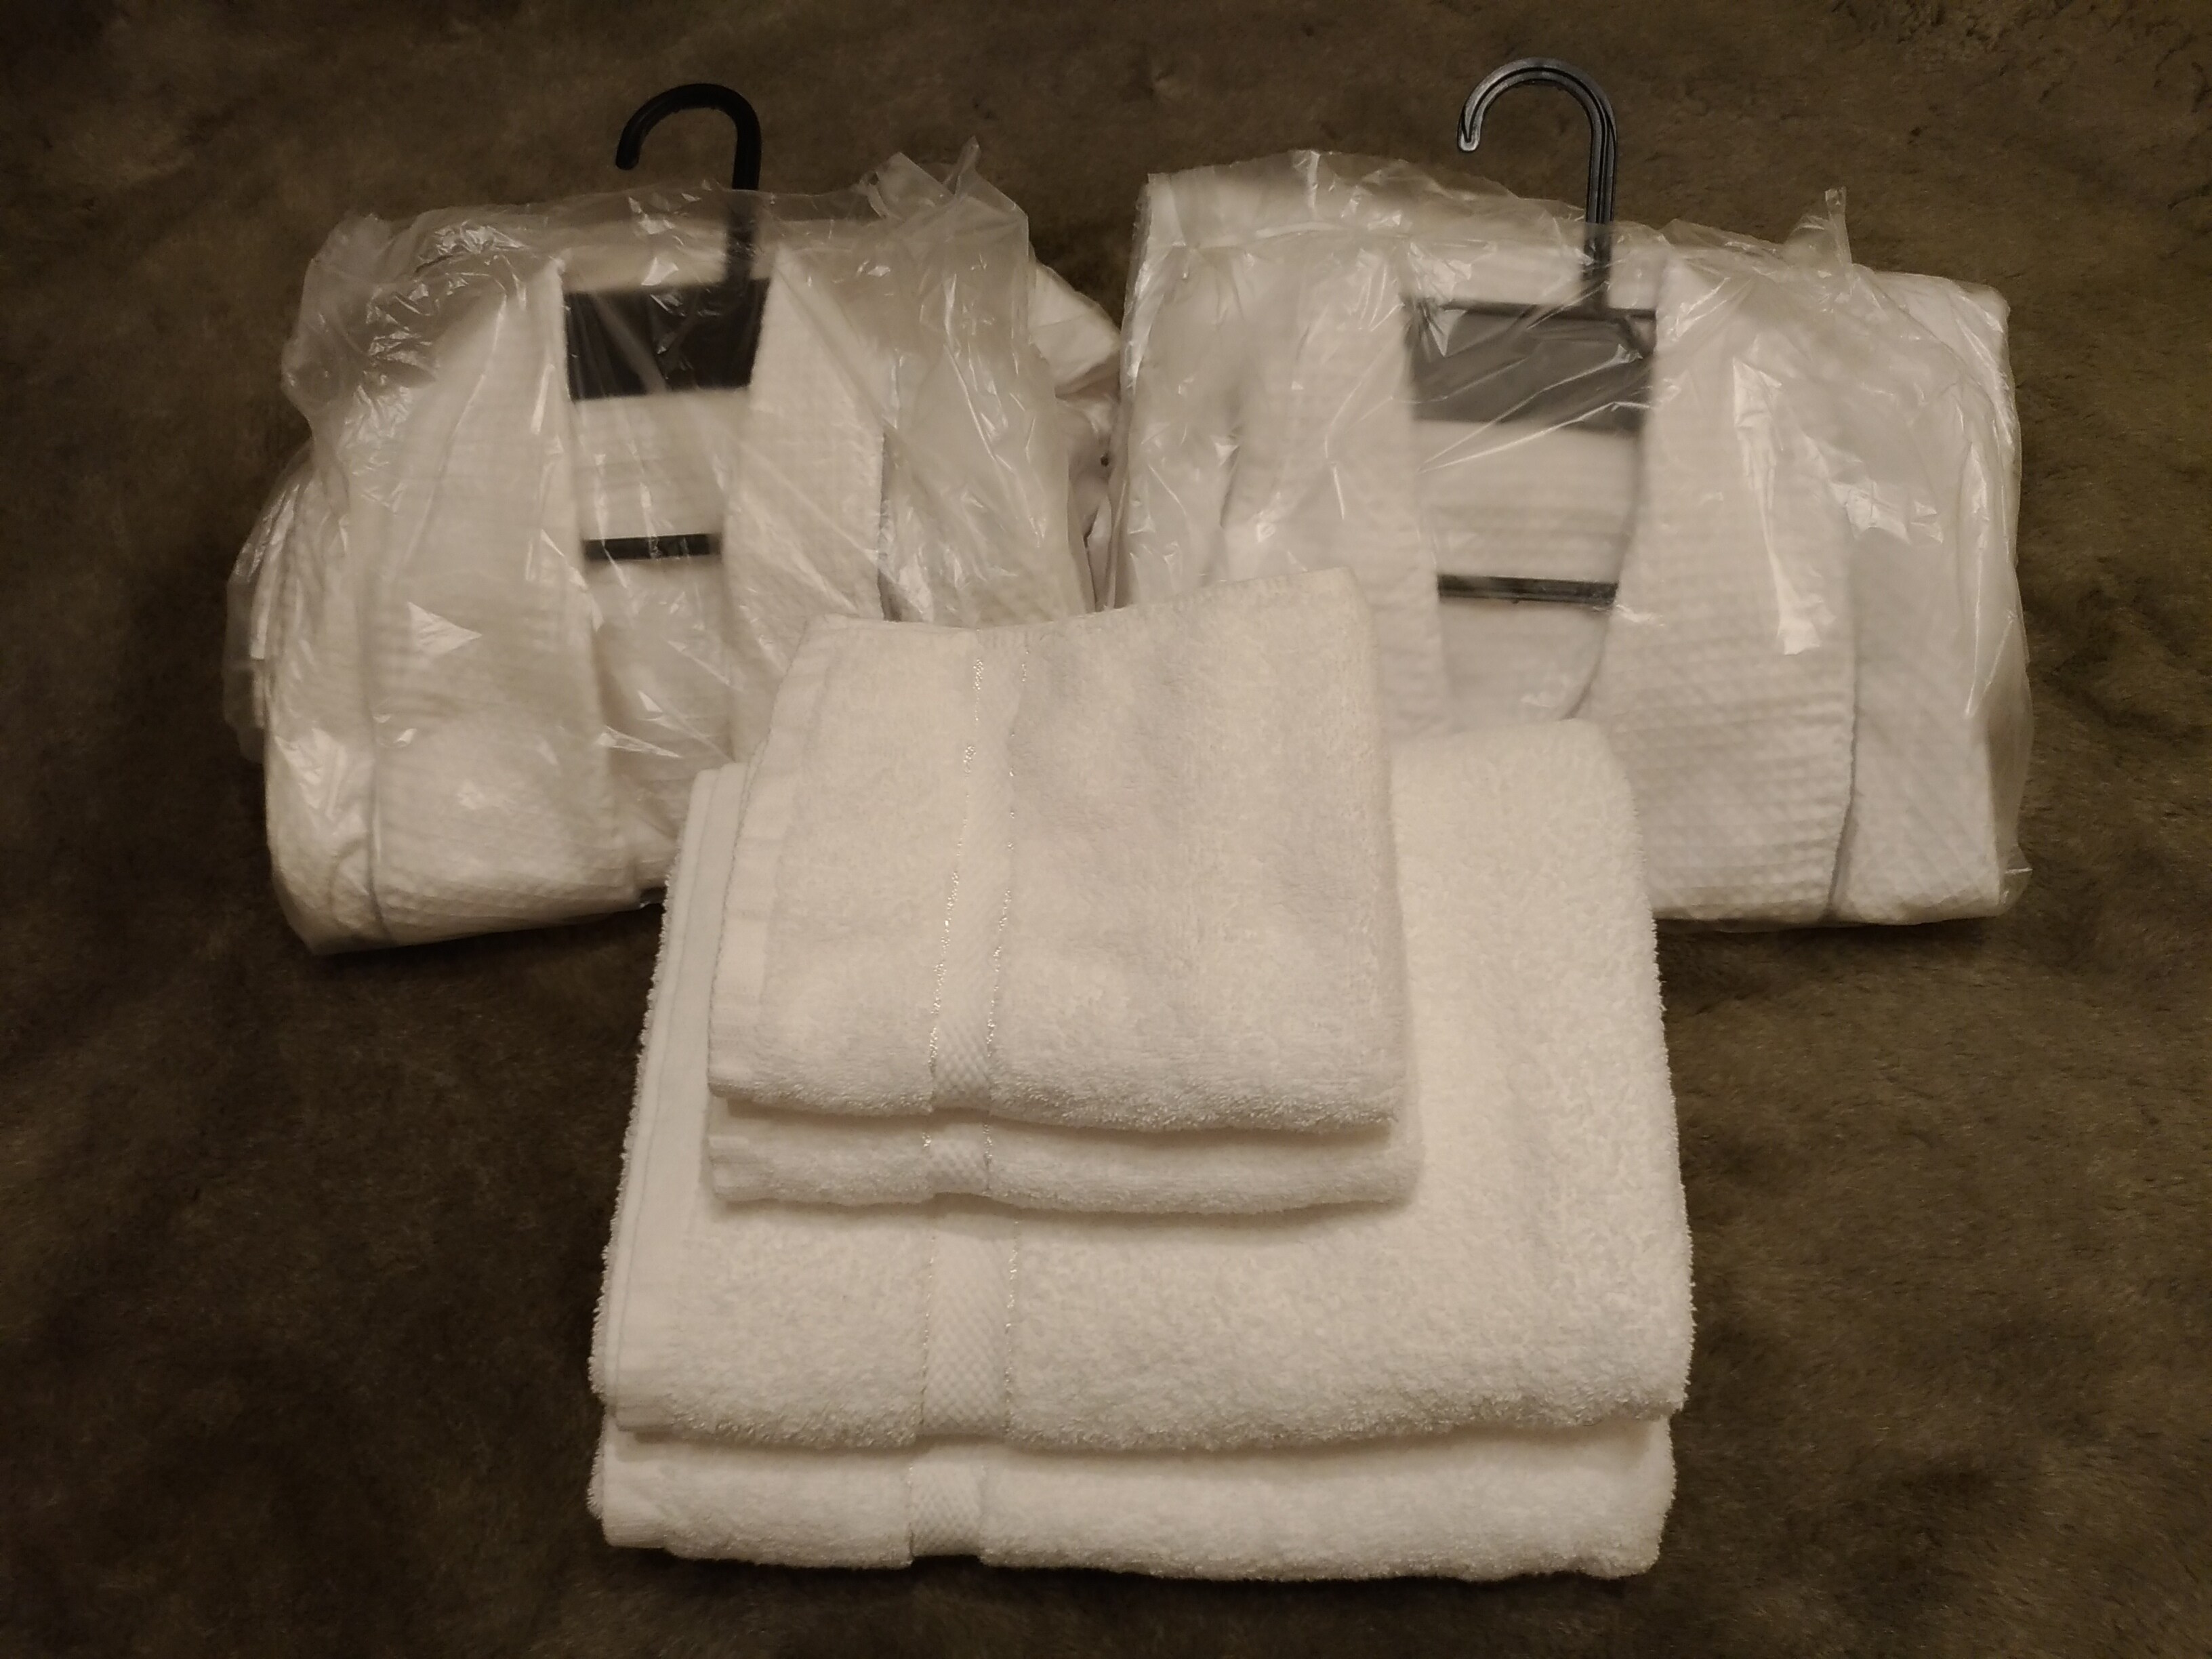 Face towel, bath towel, bathrobe